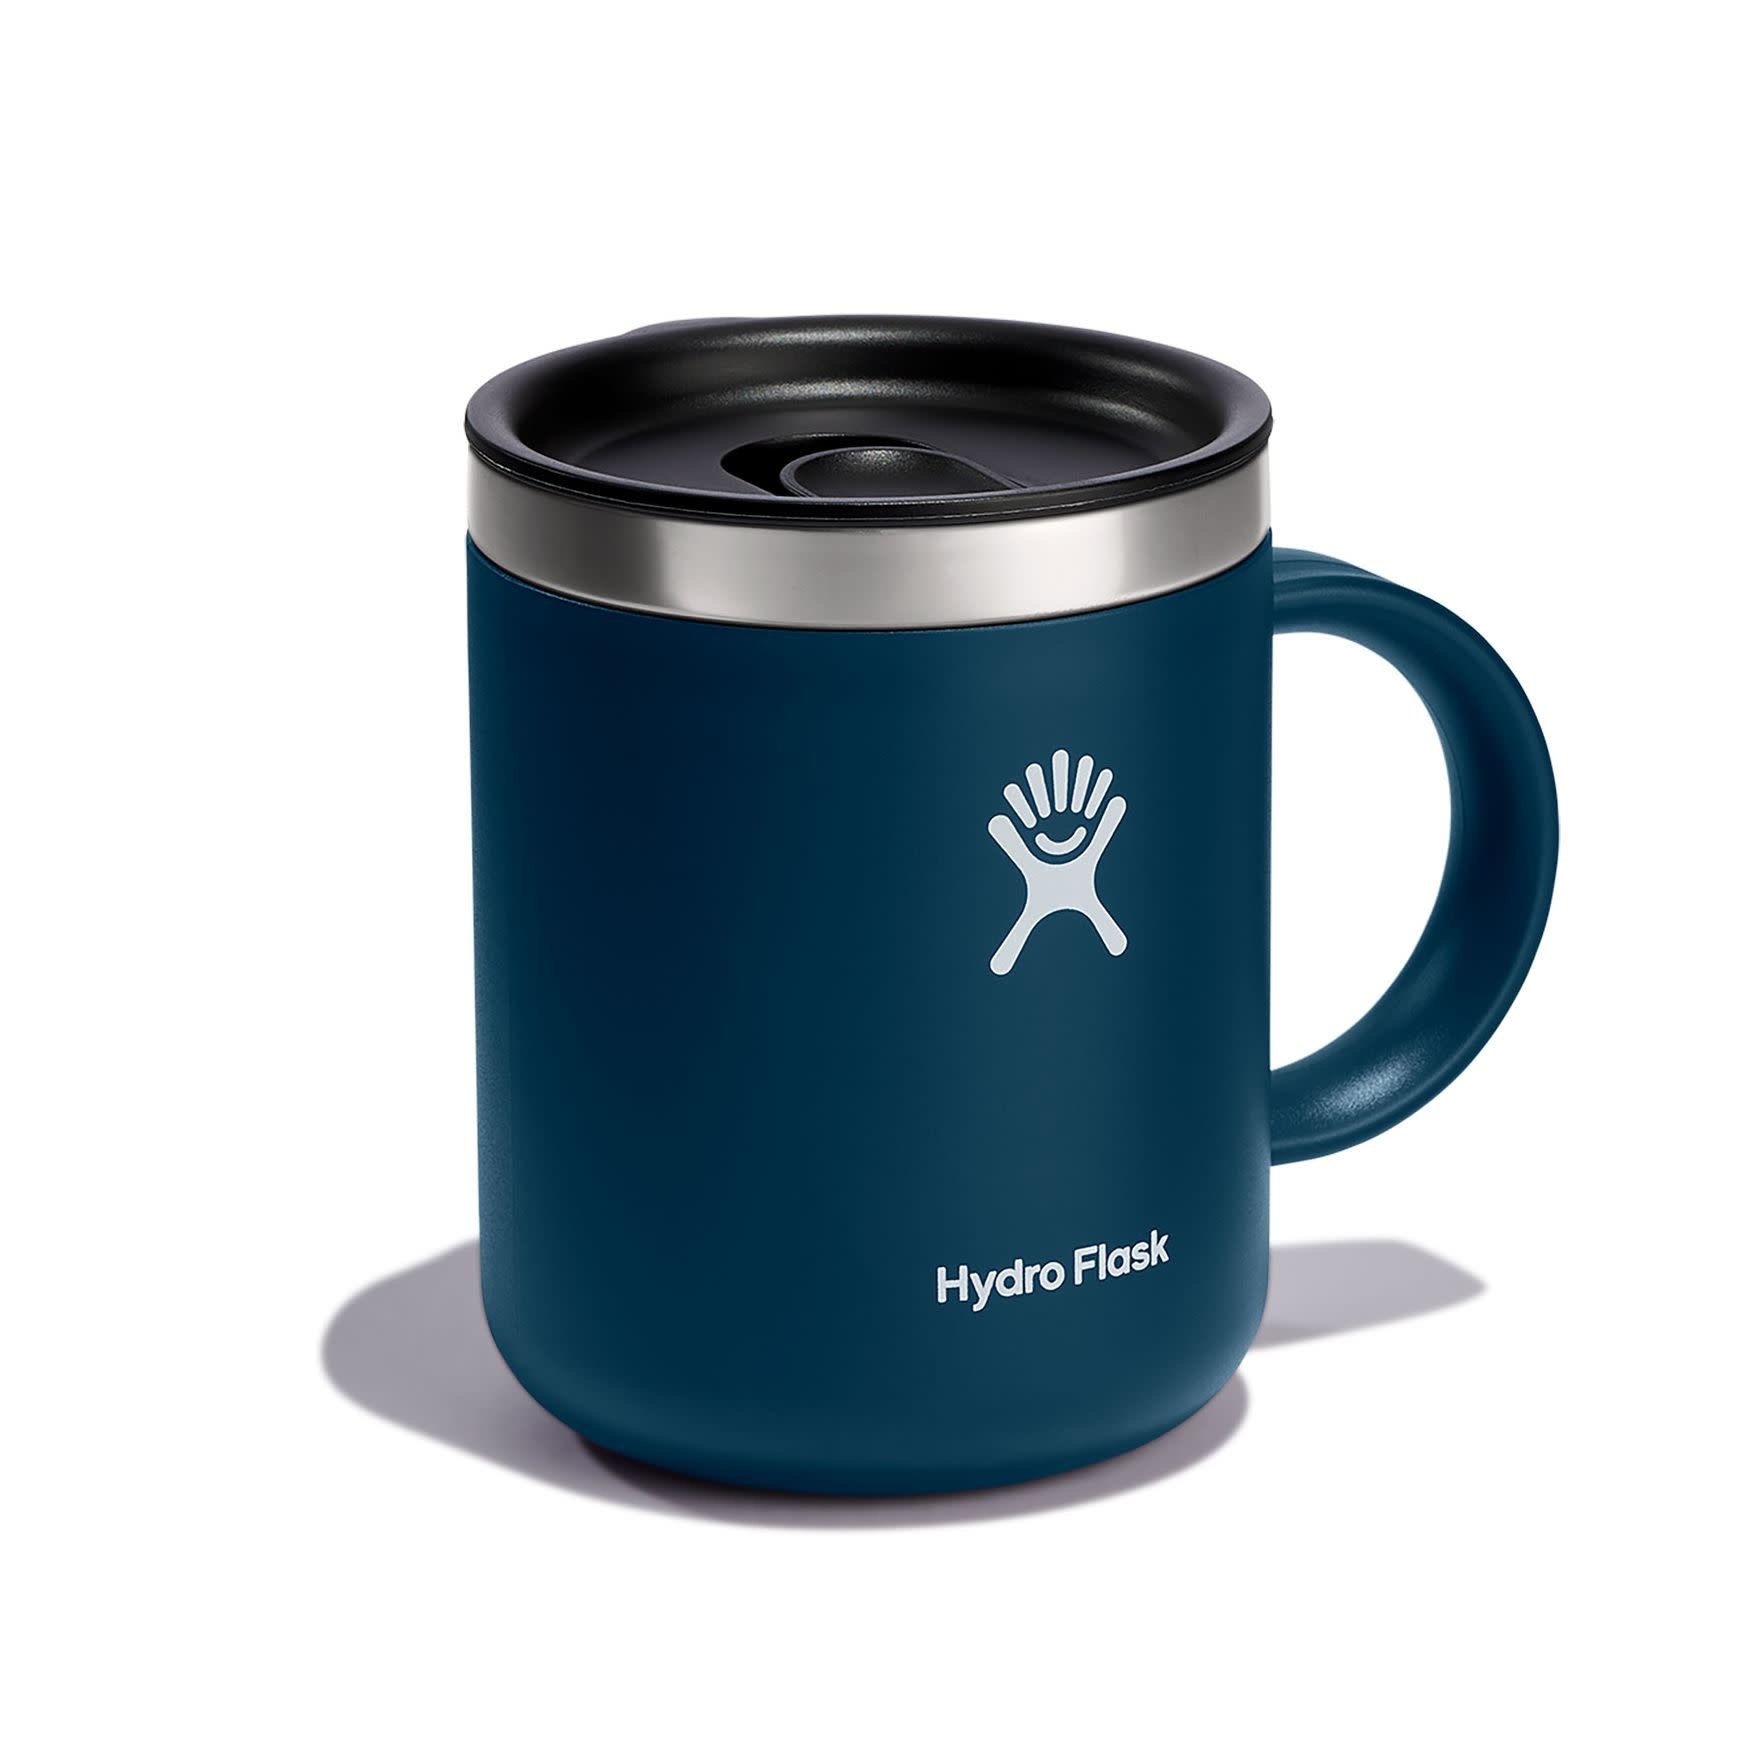 Hydroflask Coffee Mug in 12Oz/Indigo Hydro Flask